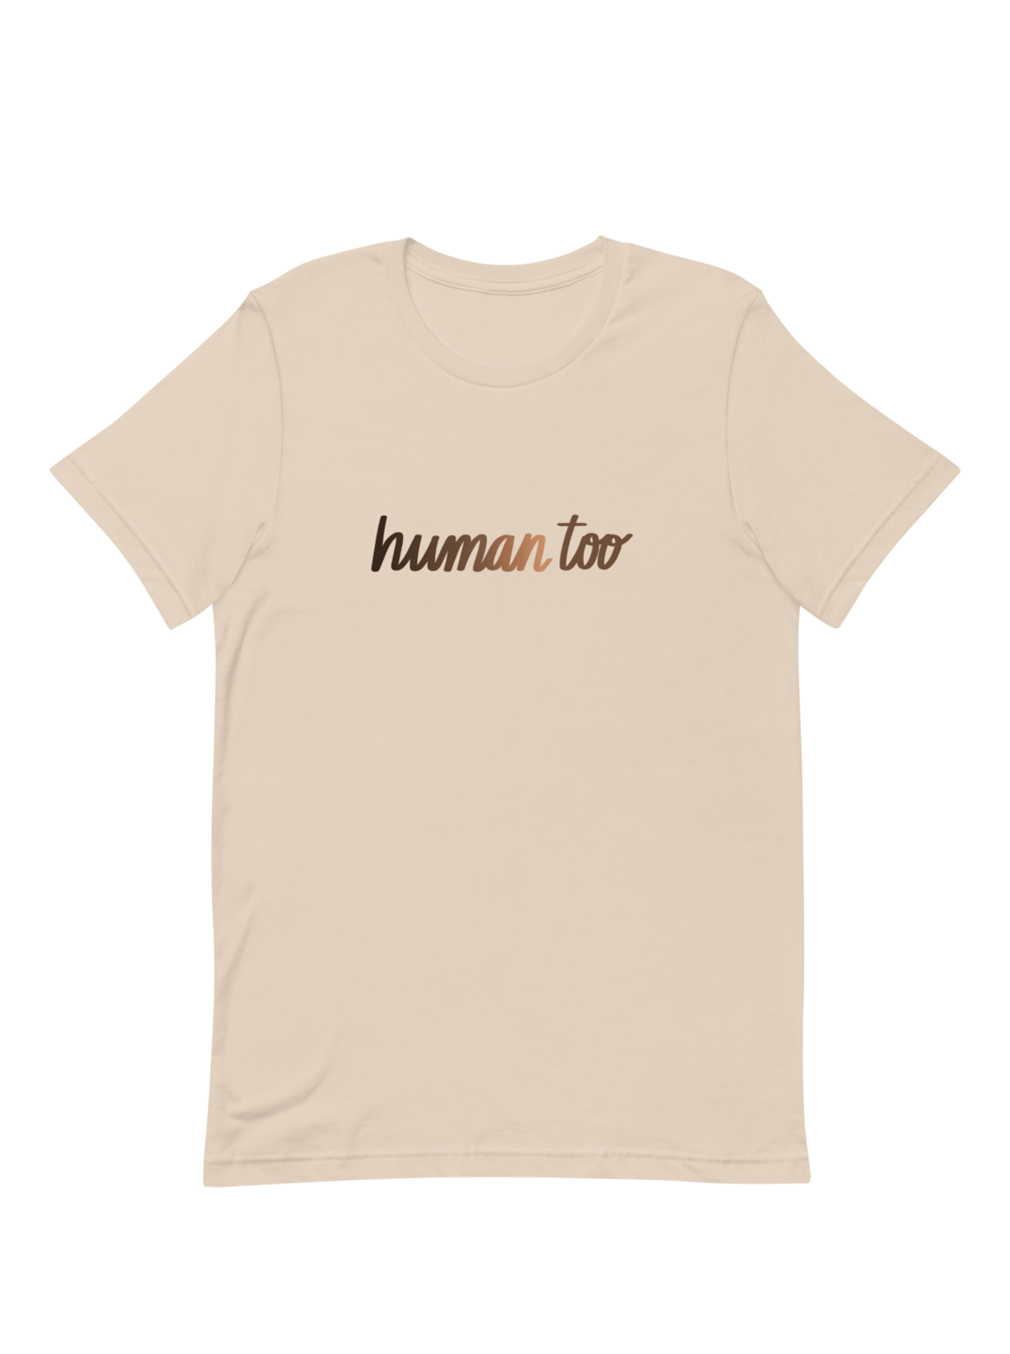 Human Too T-Shirt - Tan